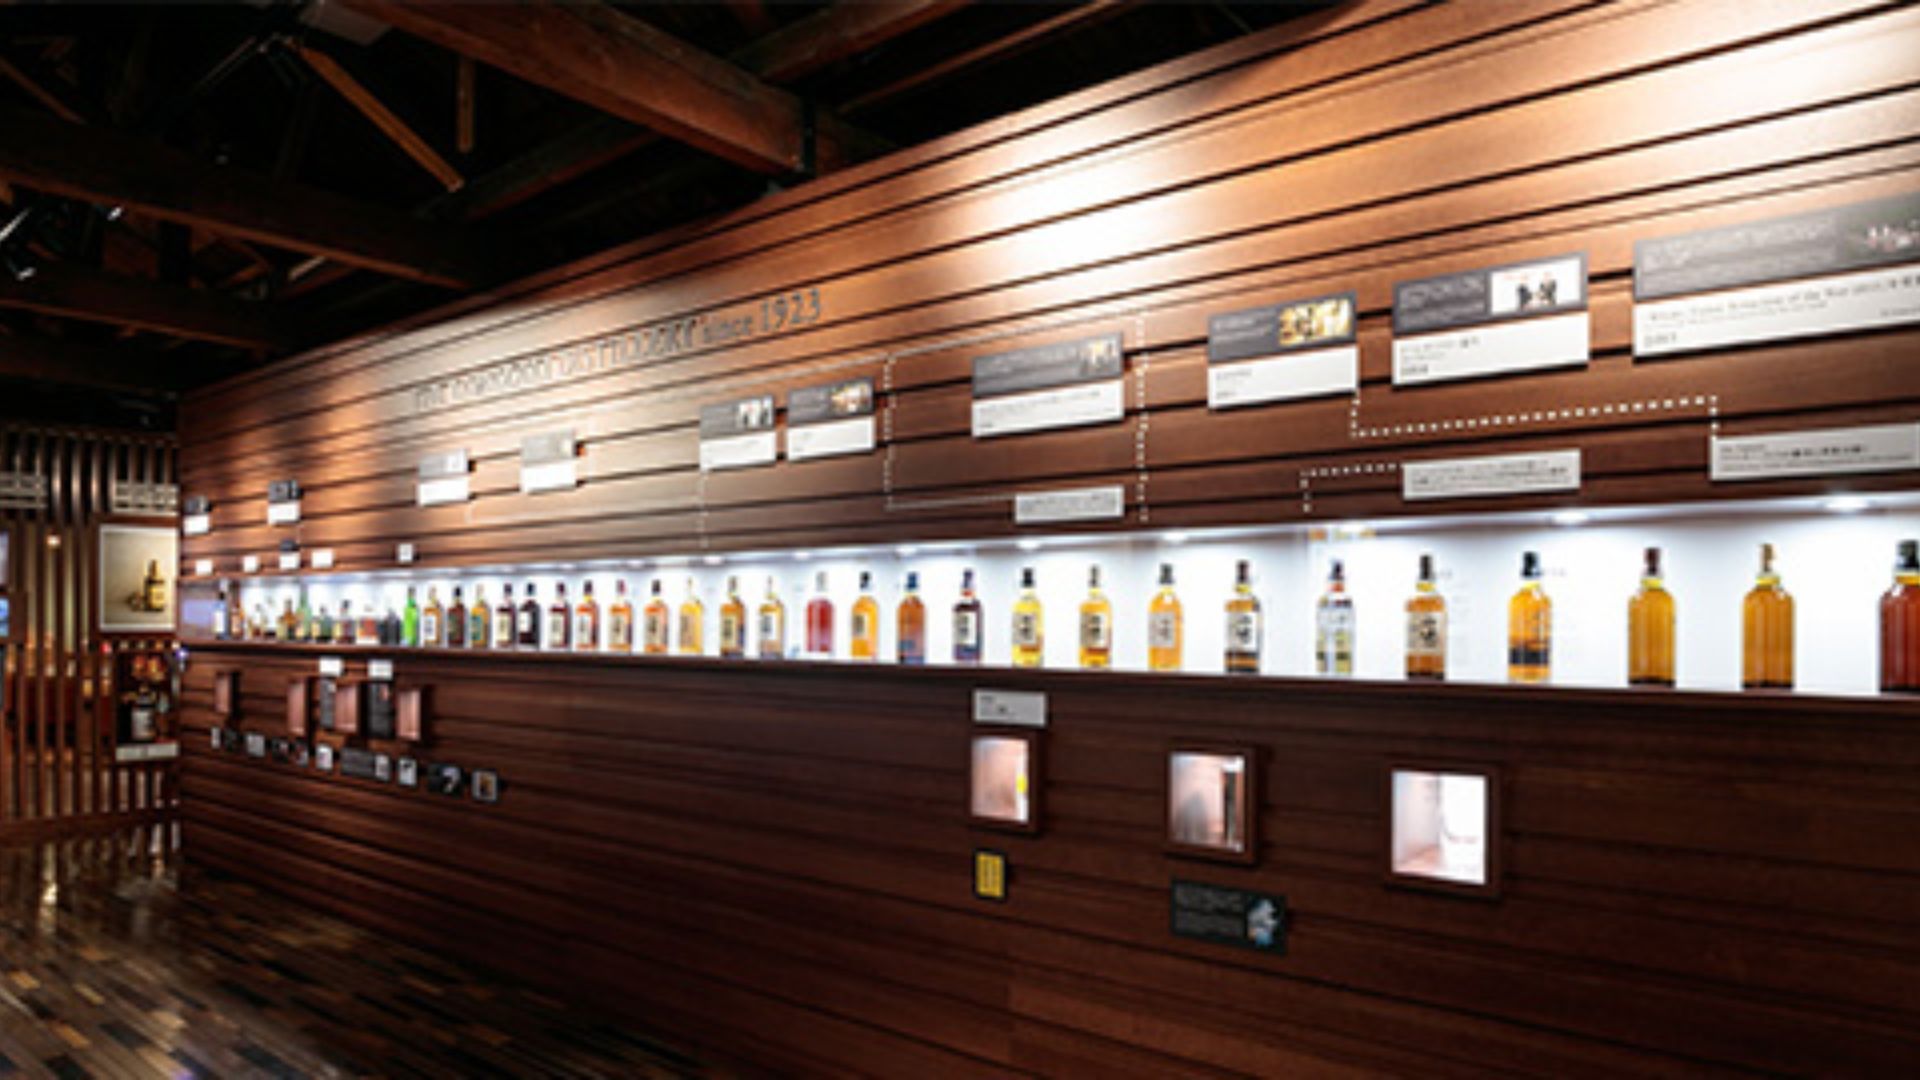 Yamazaki whisky museum